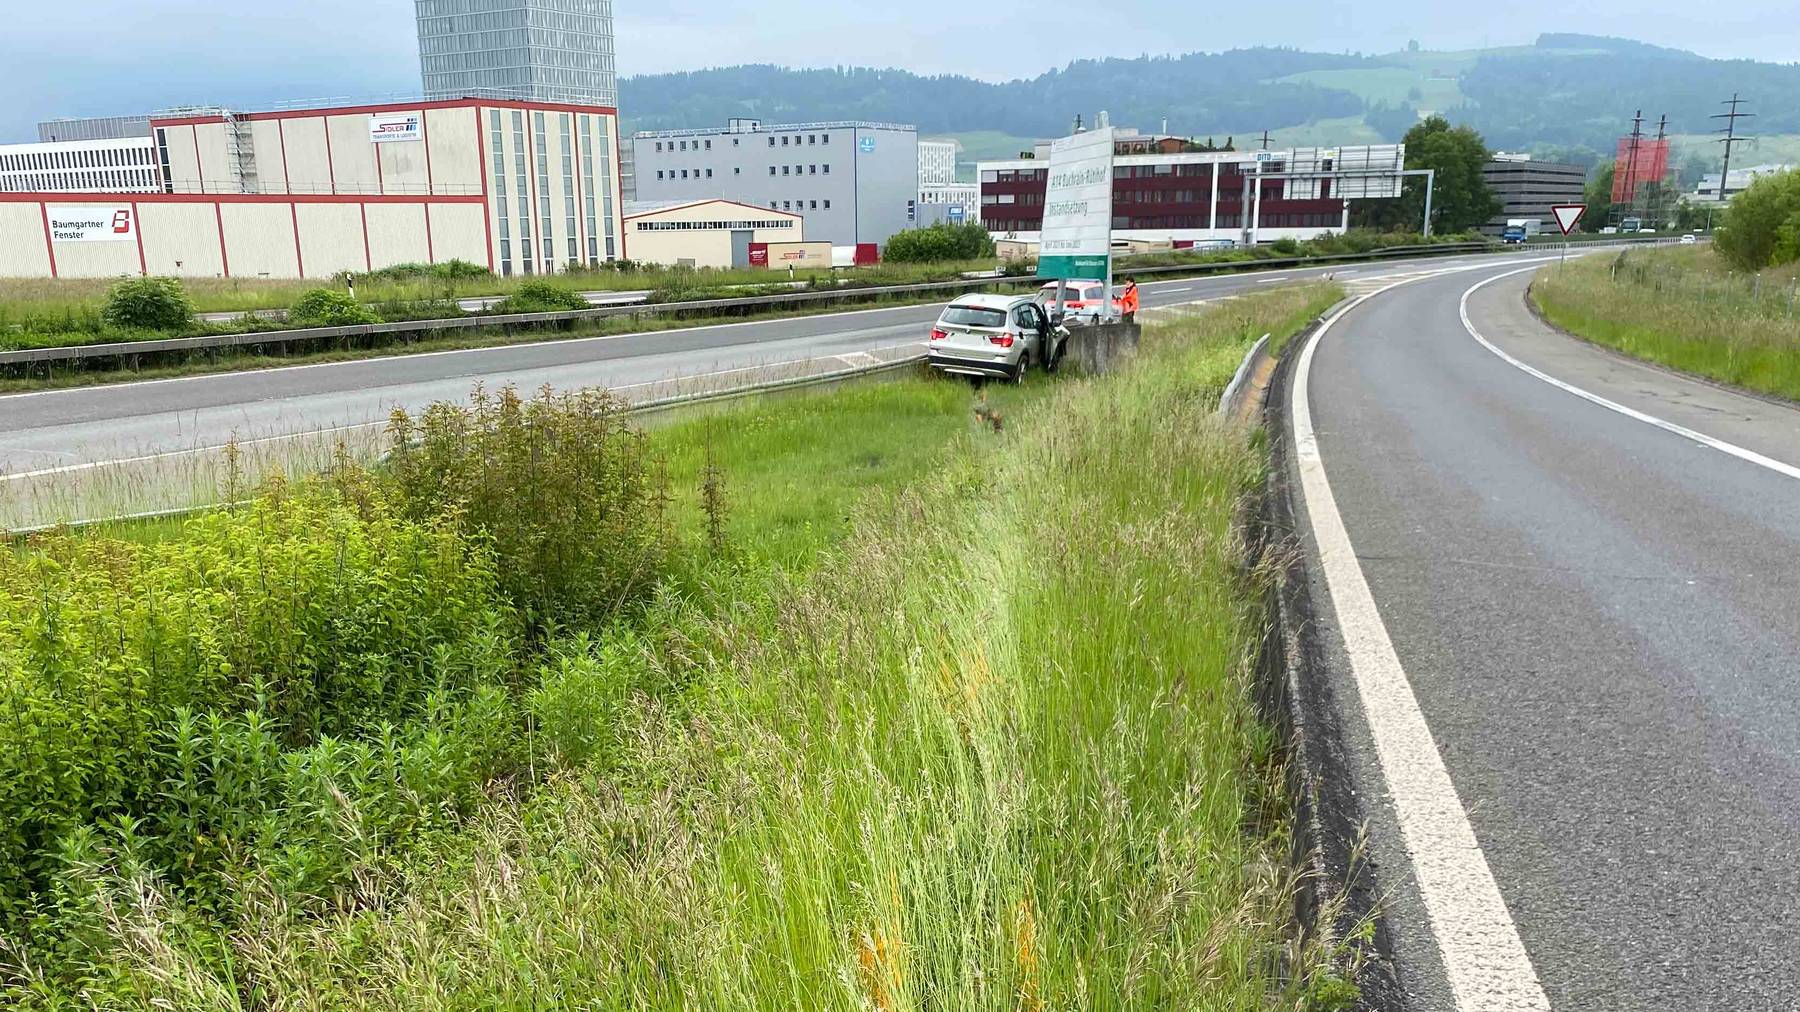 MM104_Risch Rotkreuz_Selbstunfall auf der Autobahn_Bild 1